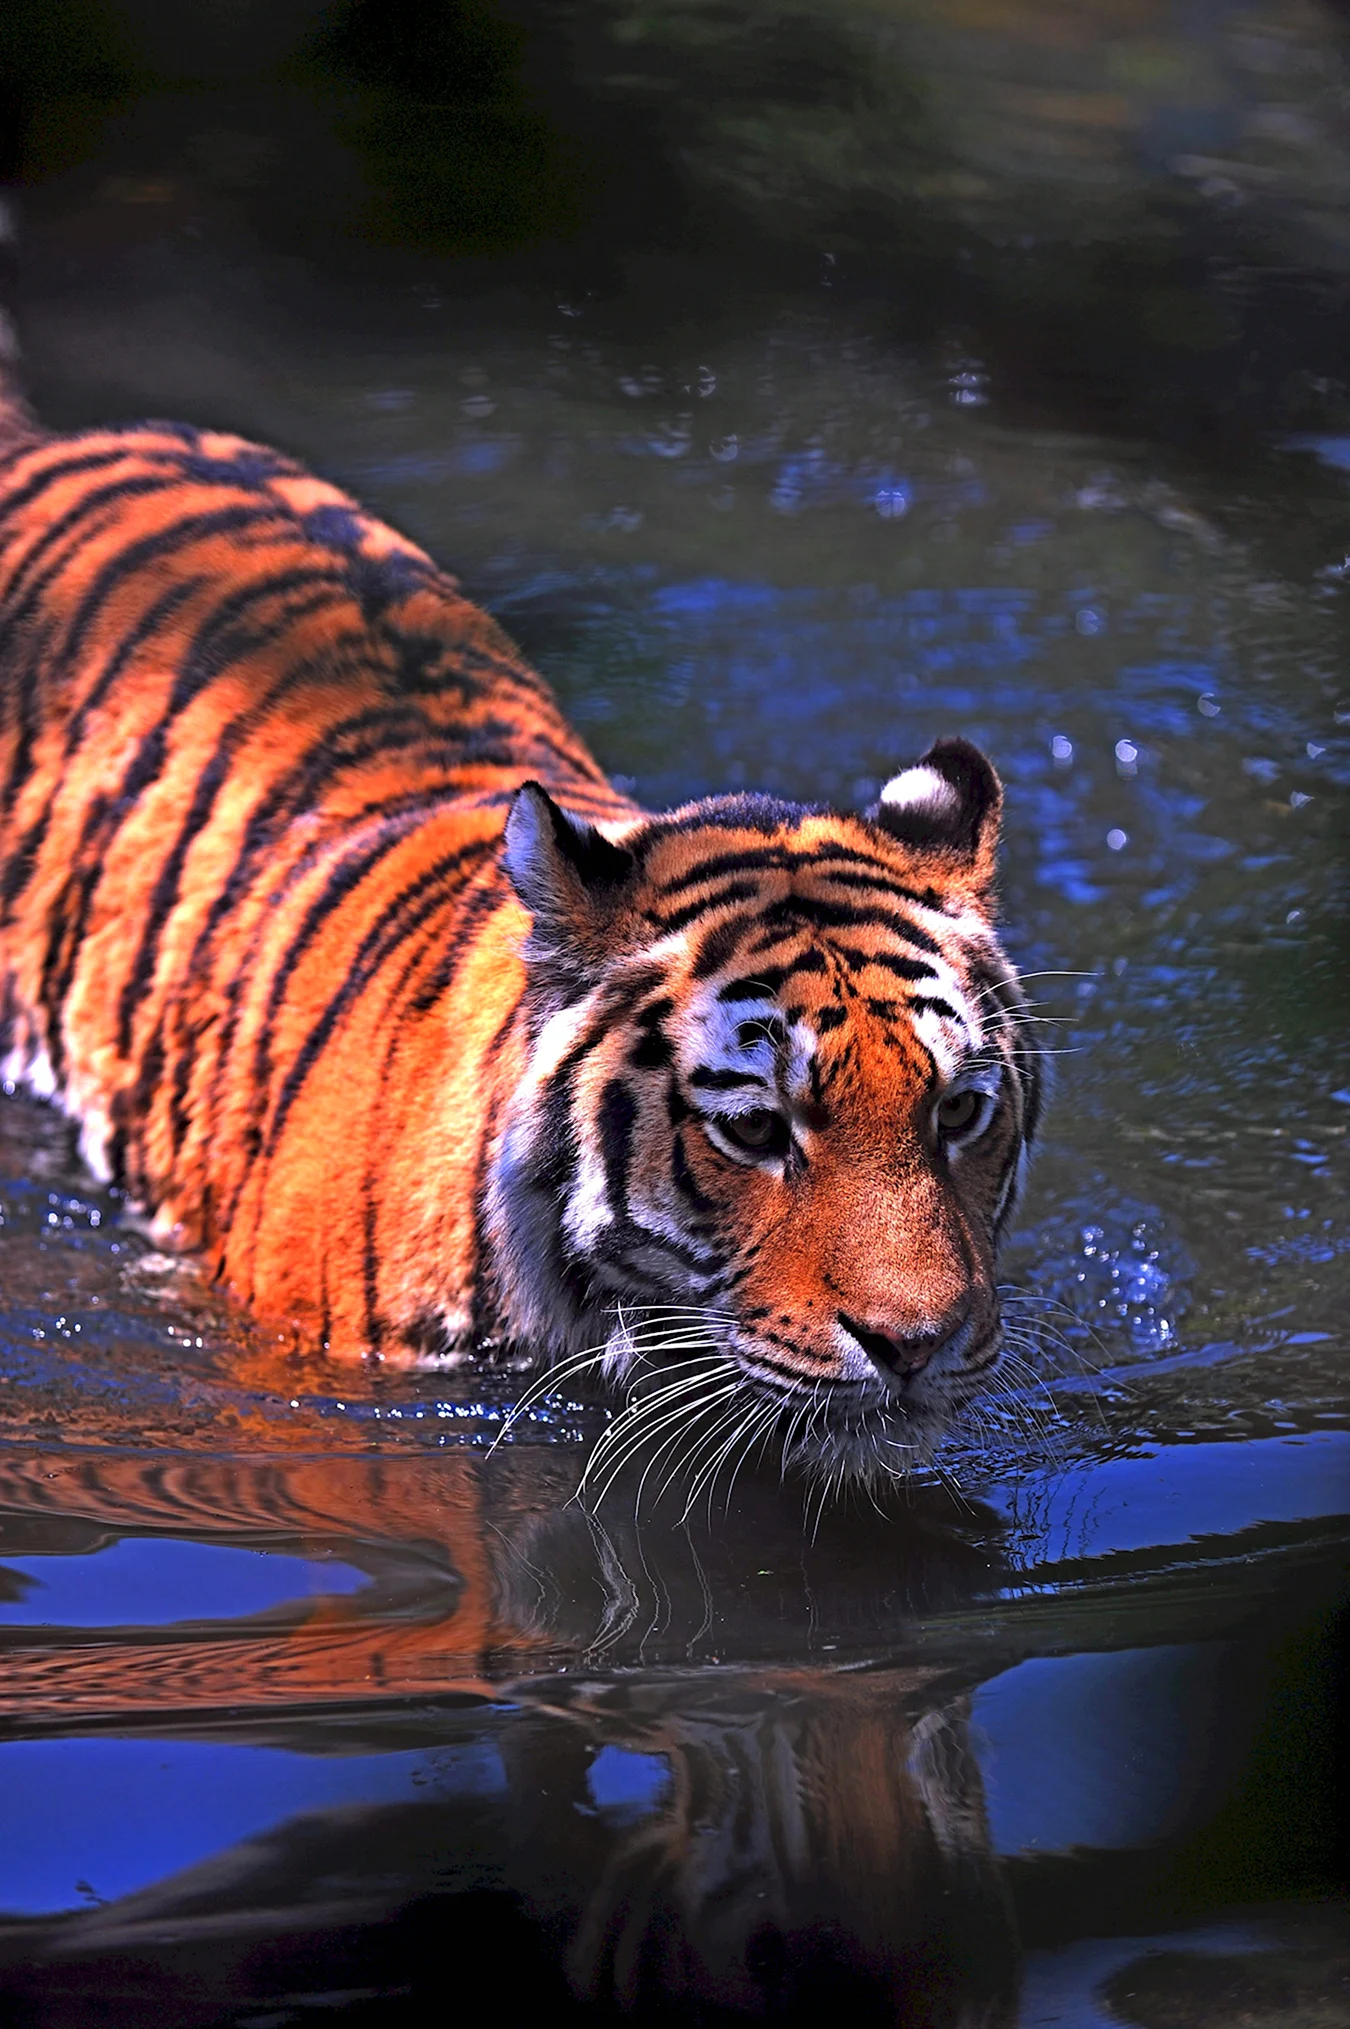 Водяной тигр аипа